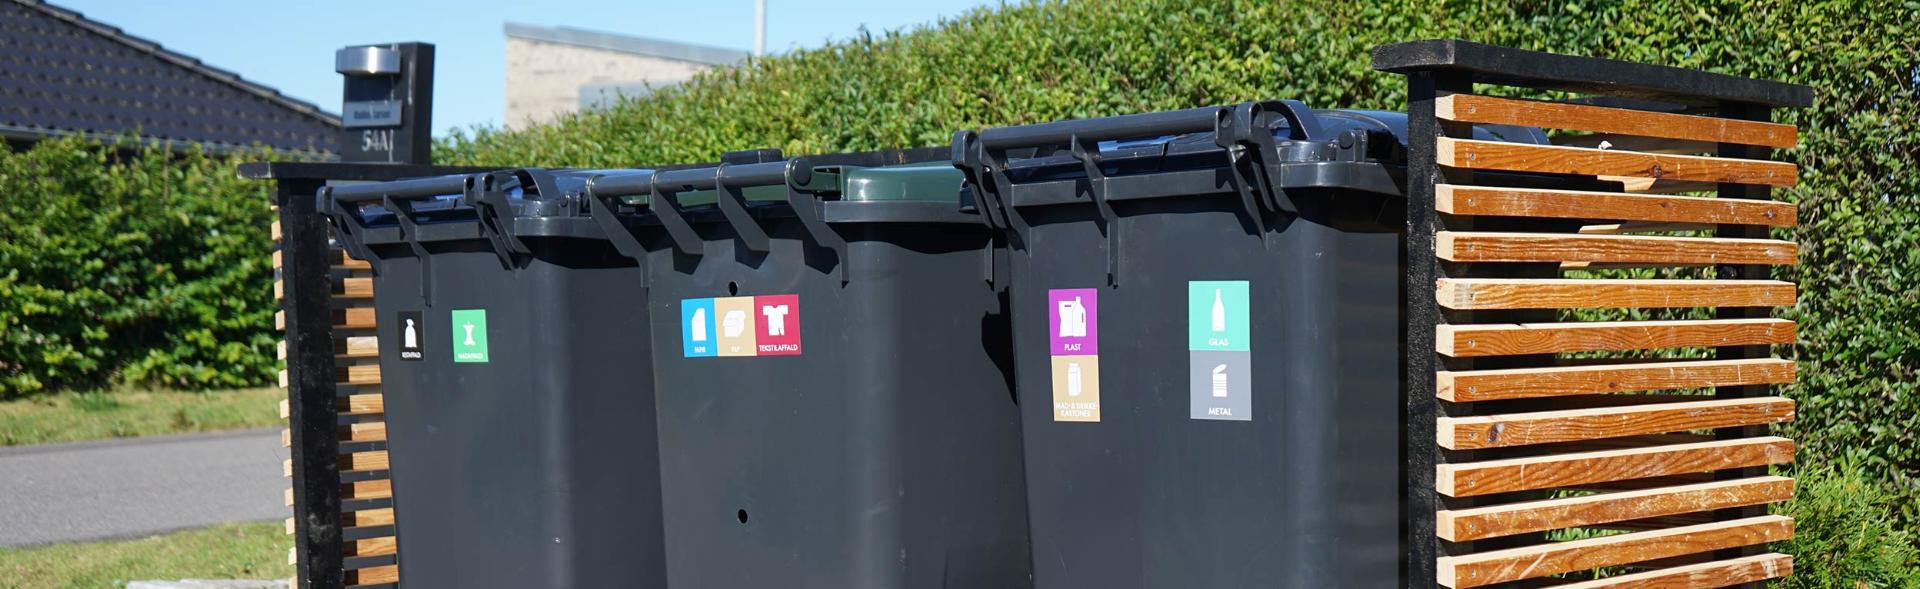 Tre affaldsbeholdere står på række i skjul langs hæk